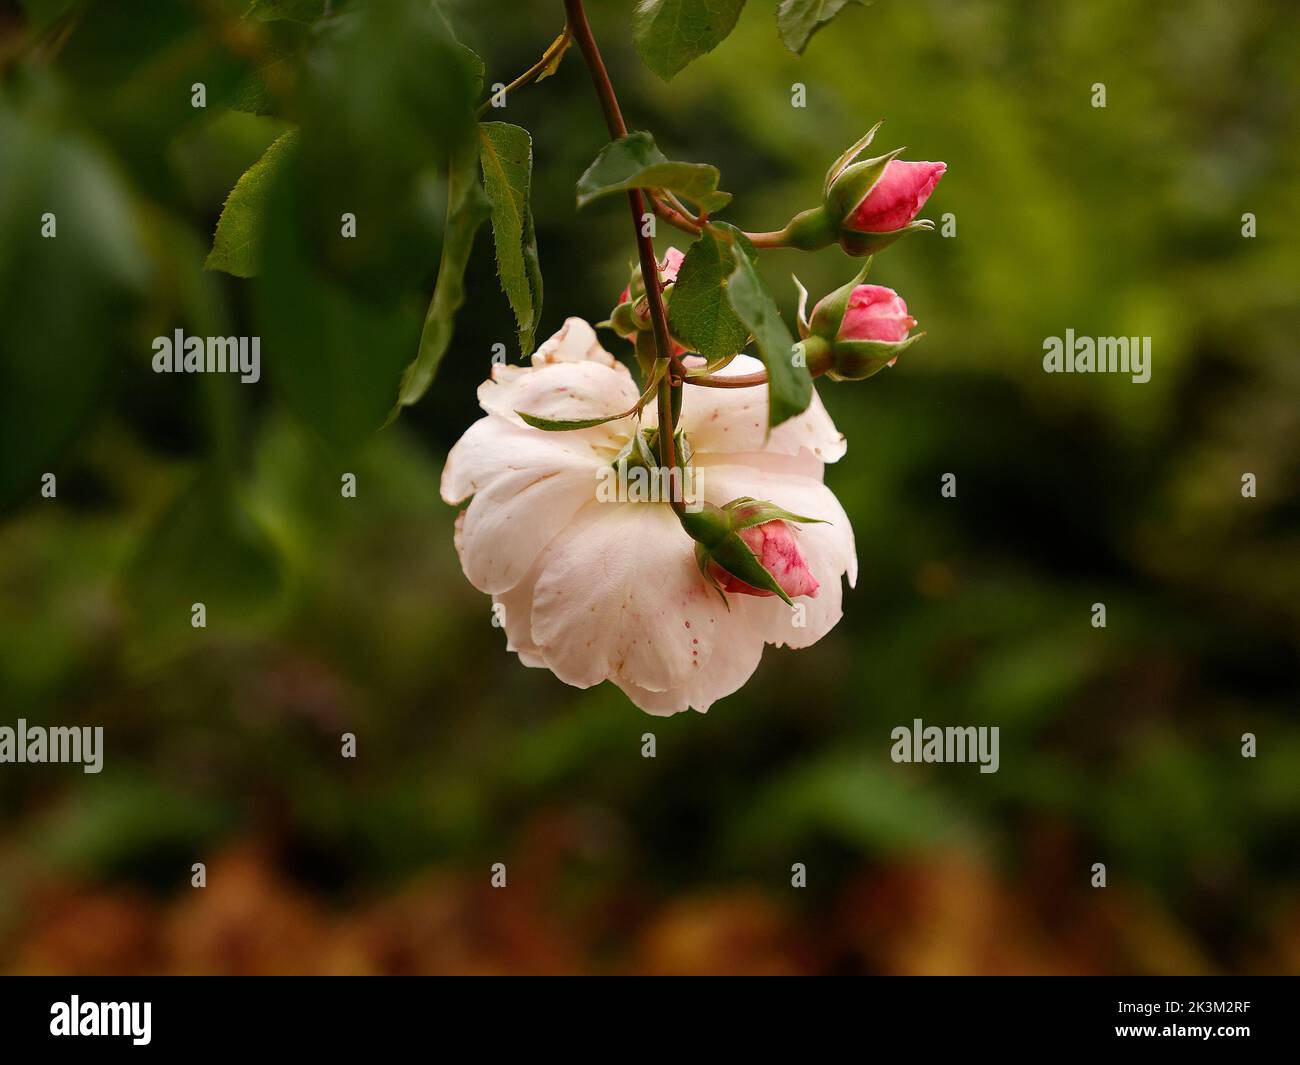 Gros plan de la floraison répétée l'escalade anglaise a augmenté le généreux Gardener avec très odorant rose pâle semi-double fleurs vu au Royaume-Uni. Banque D'Images